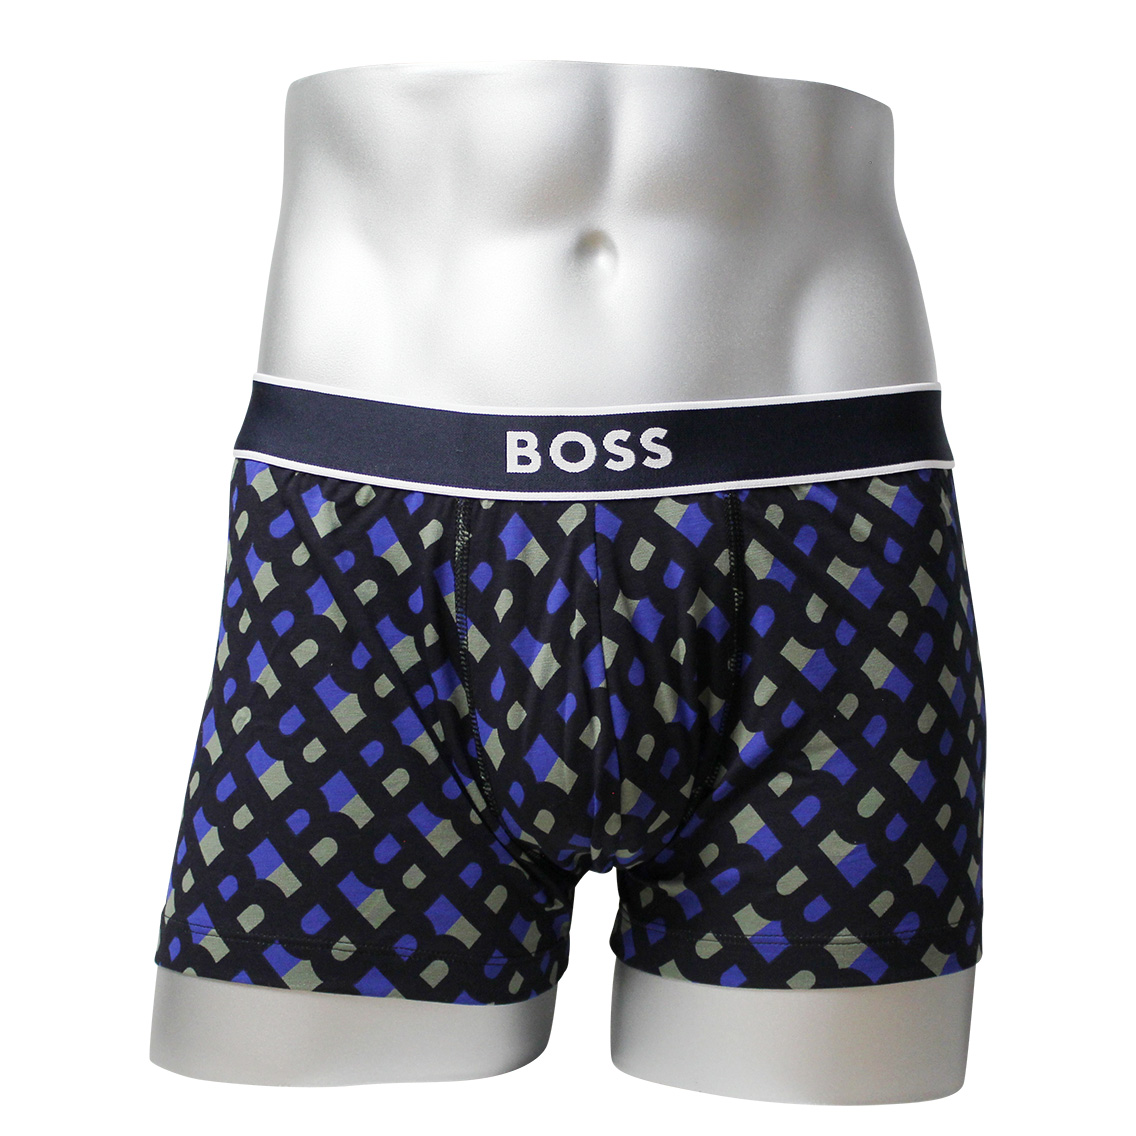 [50489443-434] HUGO BOSS ヒューゴボス ボクサーパンツ メンズ アンダーウェア インナー 男性 下着 ブランド おすすめ 人気 プレゼント